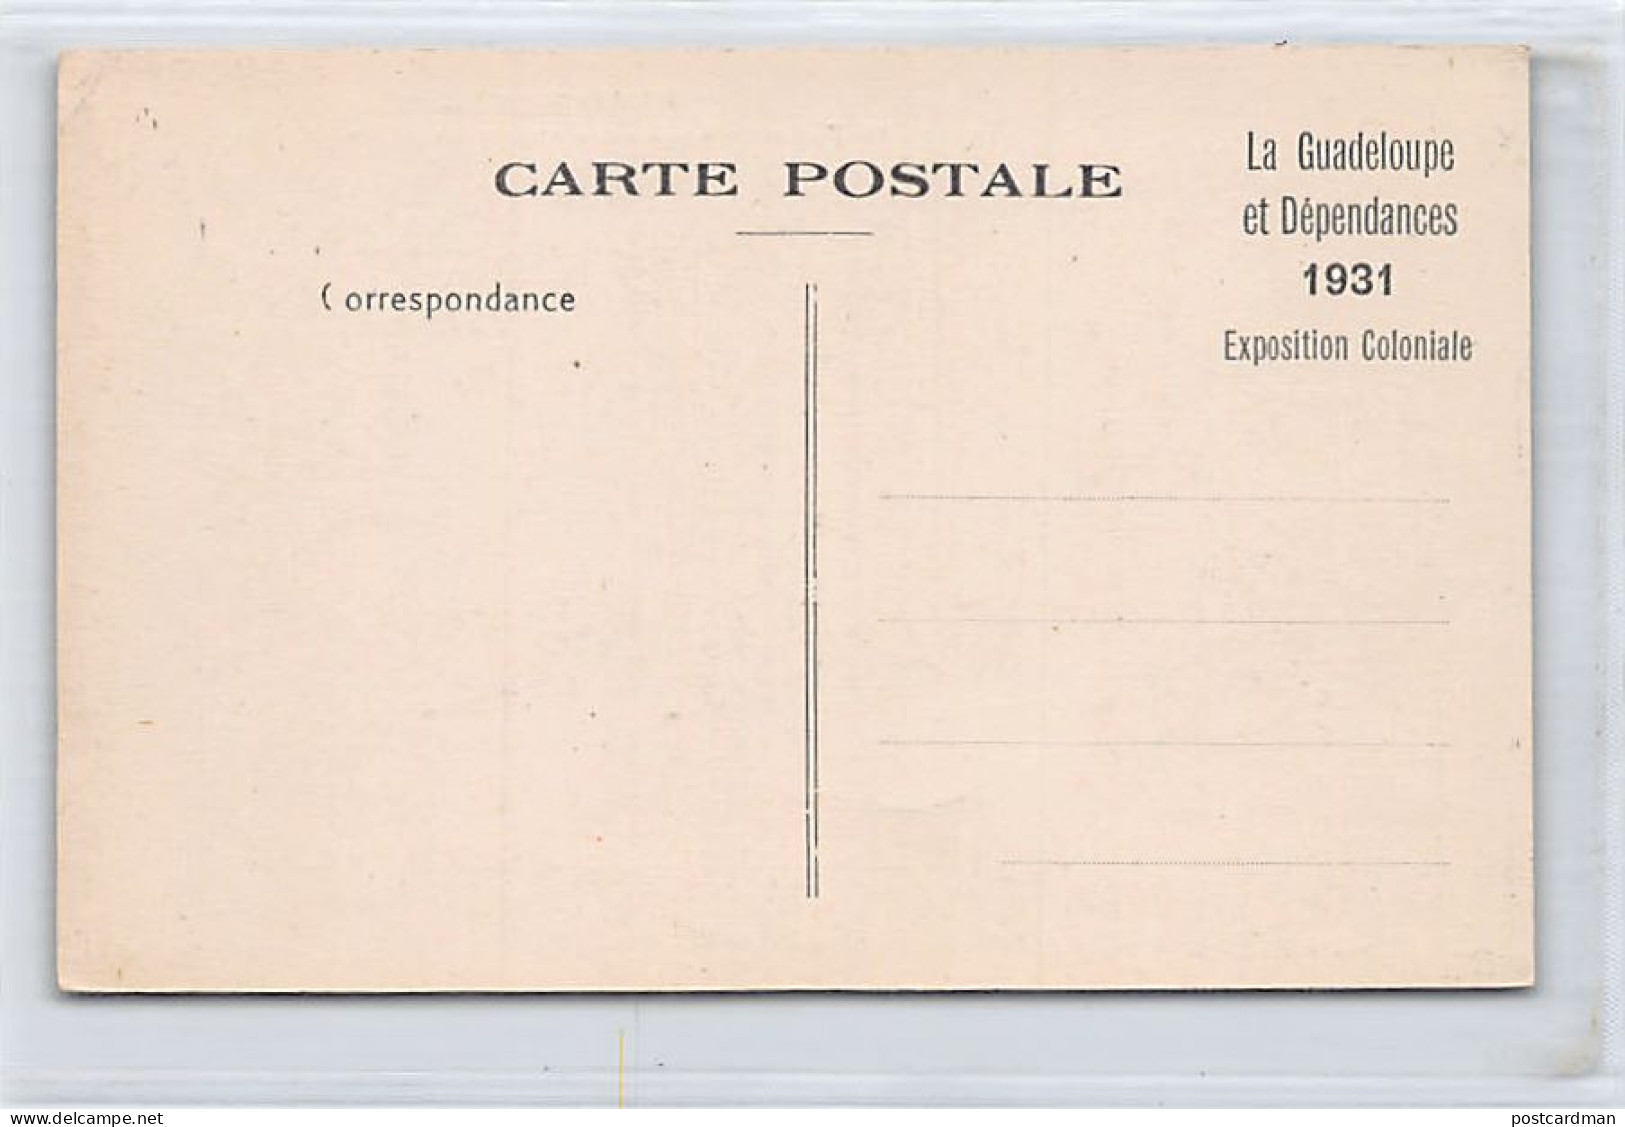 GUADELOUPE - Fermentation Du Du Vesou Pour La Fabrication Du Rhum - Ed. Catan 18 - Other & Unclassified